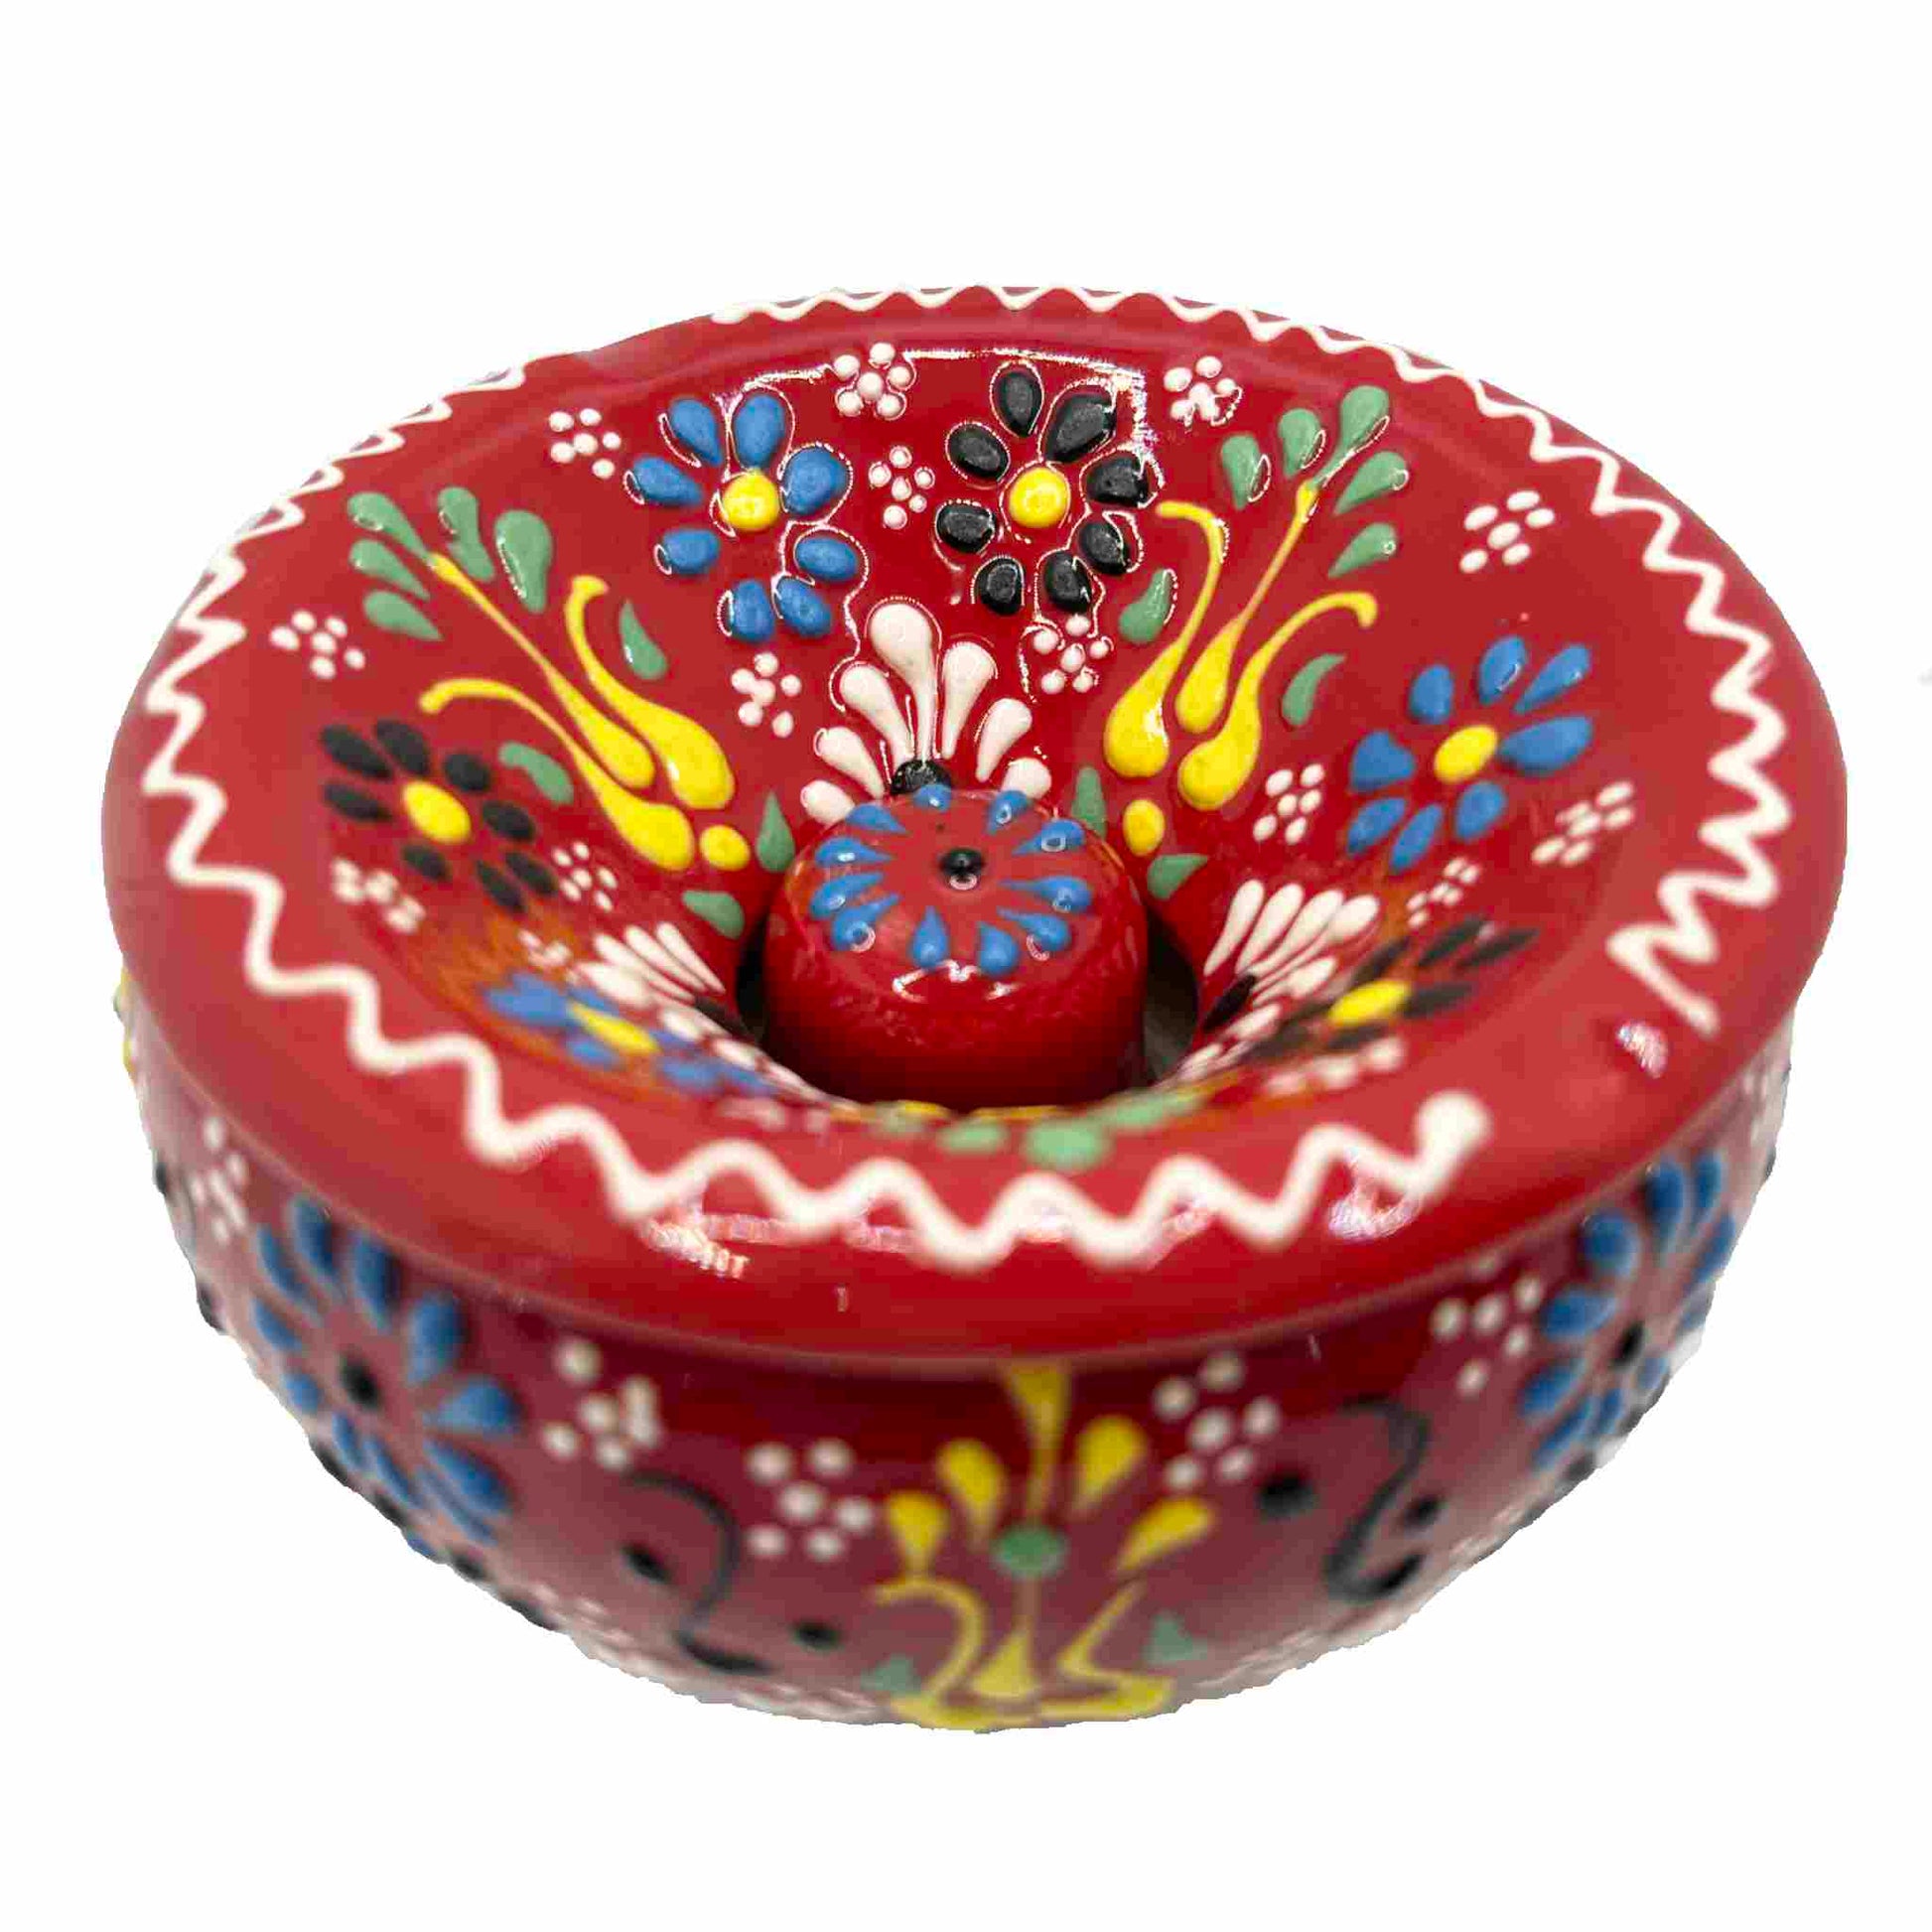 Cenicero de cerámica turca artesanal, con tapa Lace, rojo.